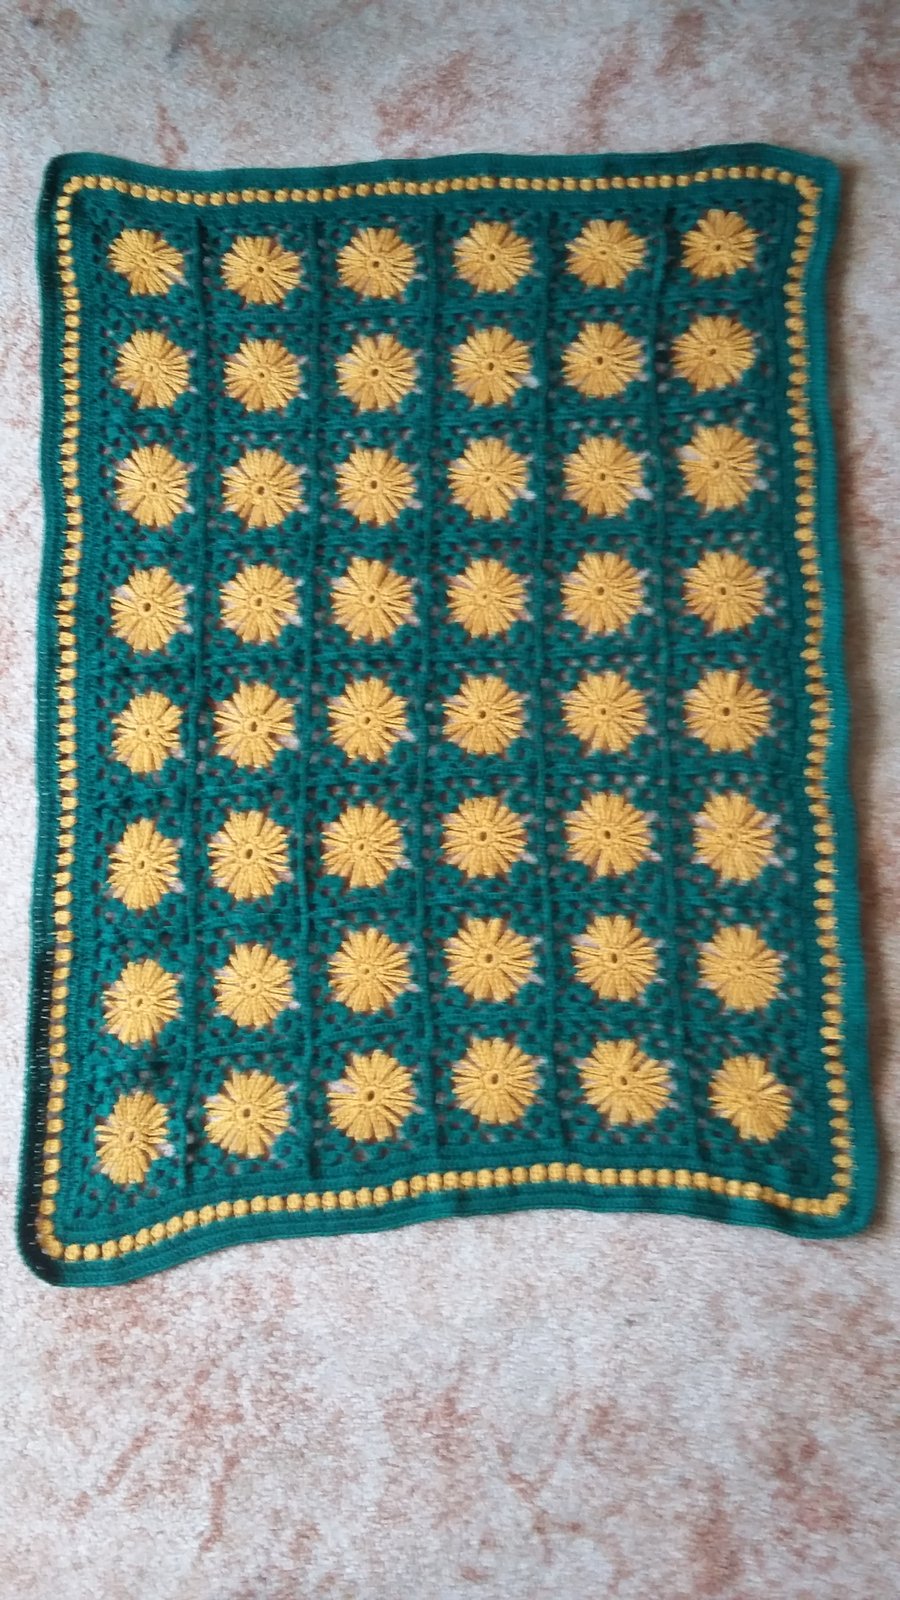 Crochet Sunflower Blanket in merino blend wool.